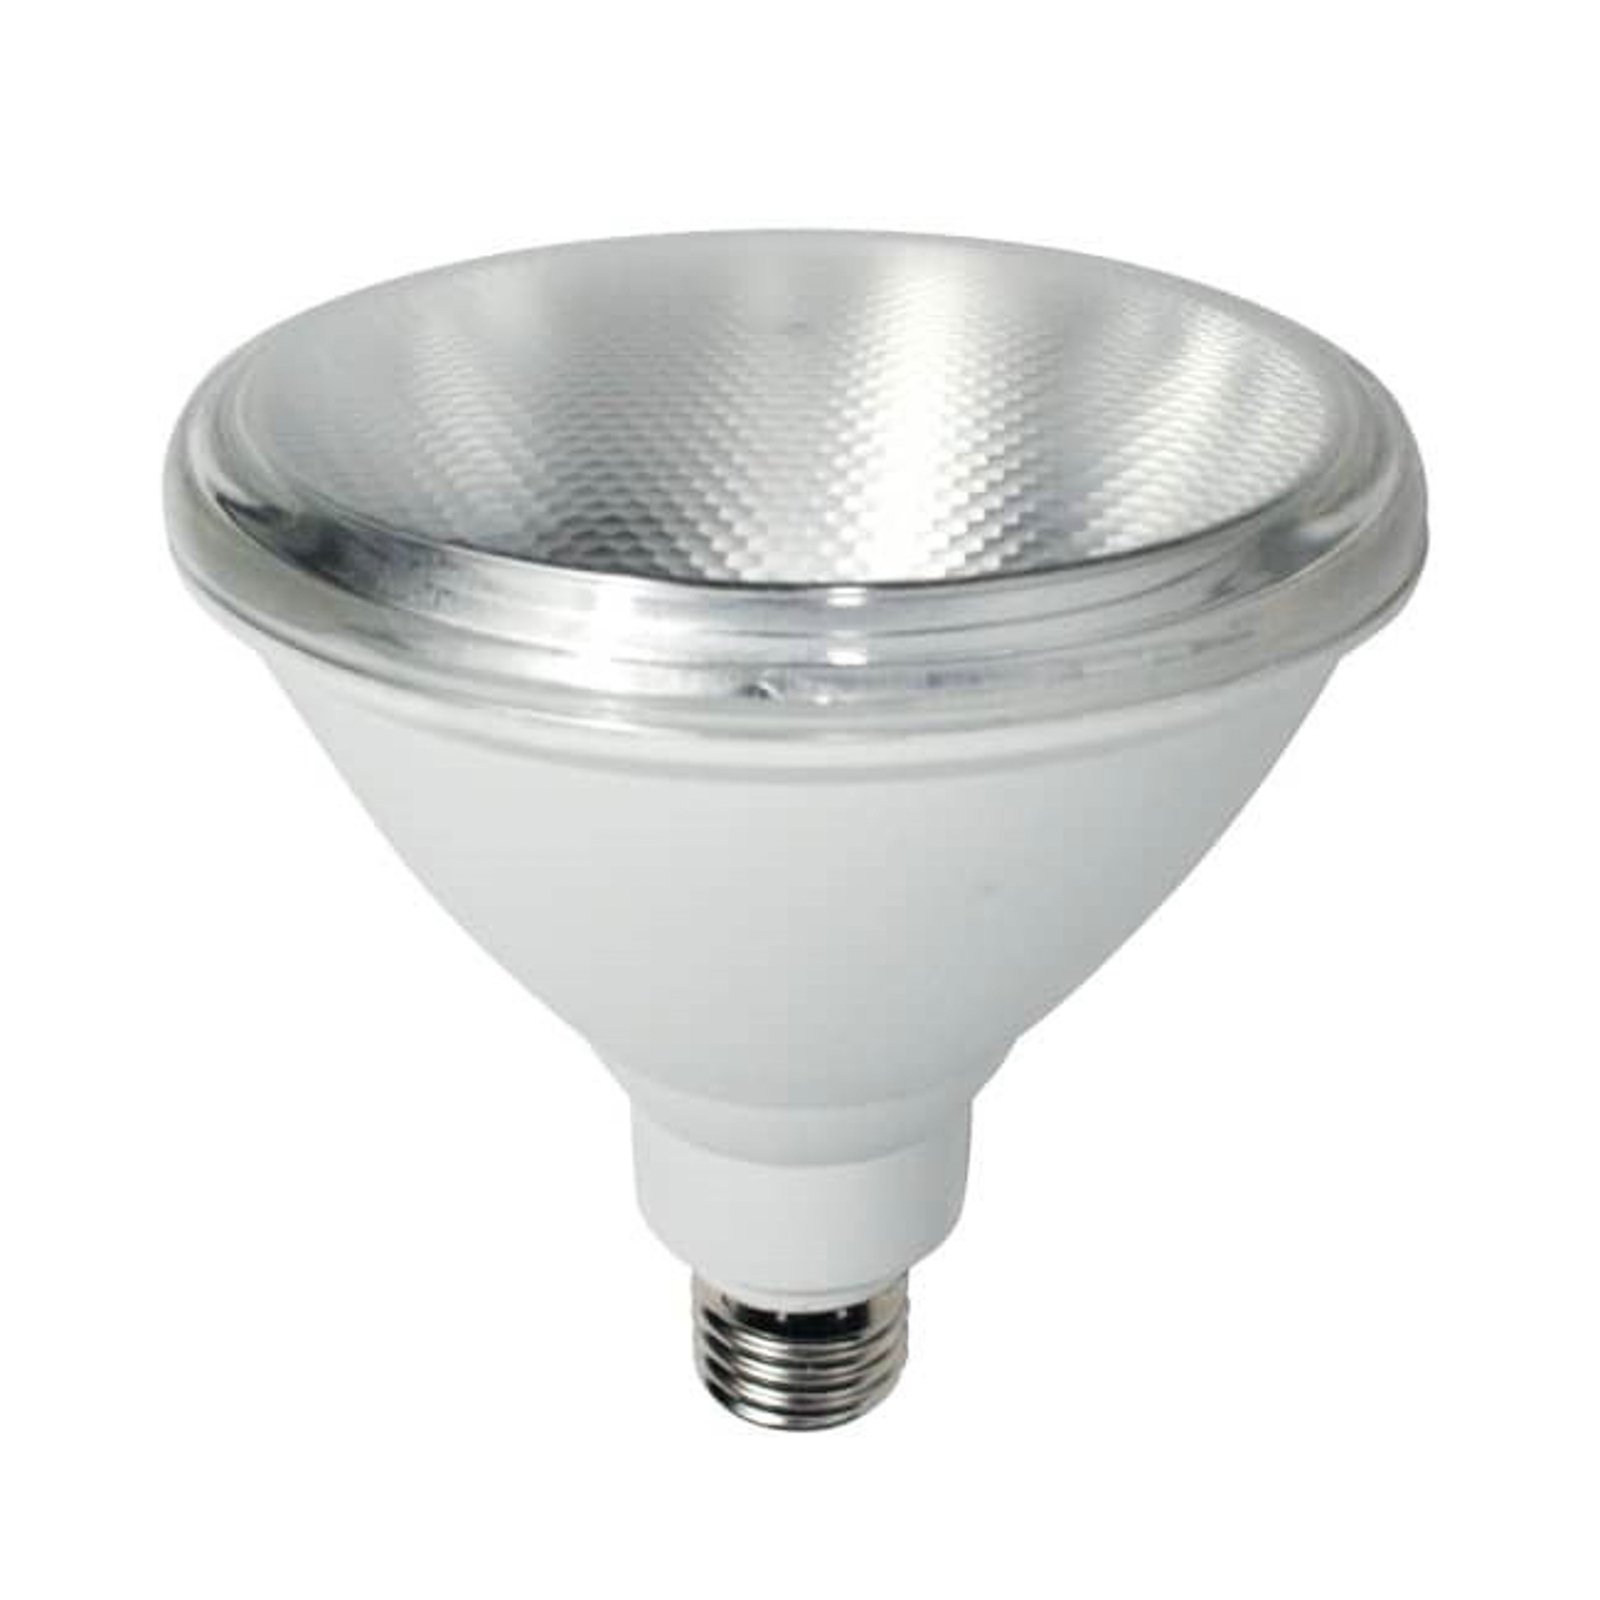 LED grow light bulb E27, PAR38, 10W, full spectrum